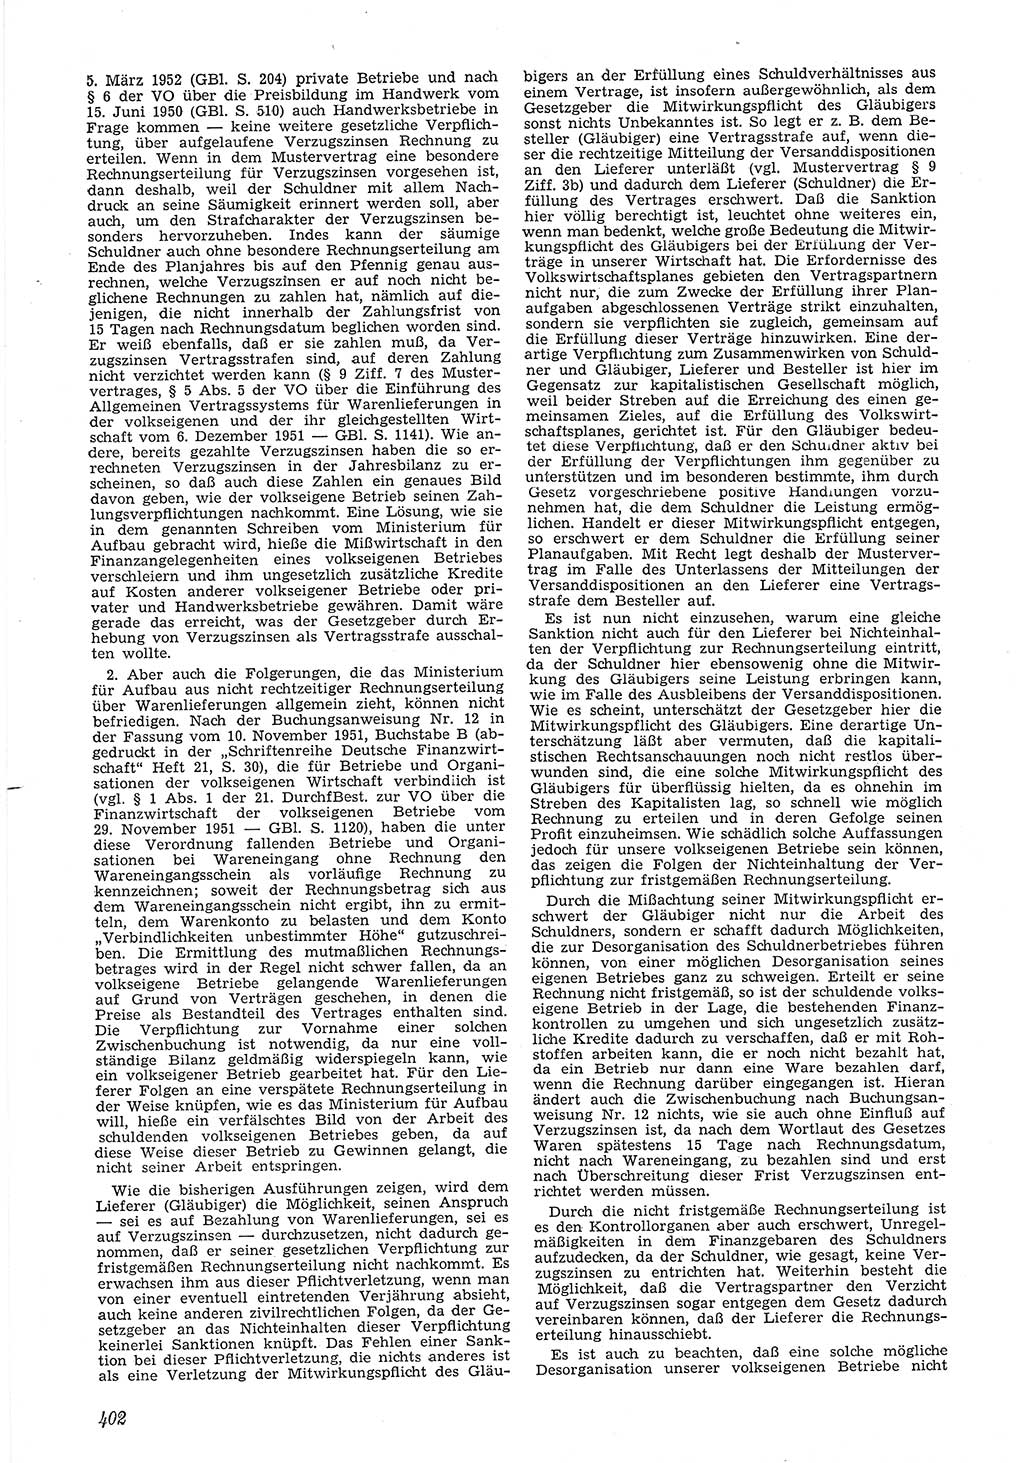 Neue Justiz (NJ), Zeitschrift für Recht und Rechtswissenschaft [Deutsche Demokratische Republik (DDR)], 6. Jahrgang 1952, Seite 402 (NJ DDR 1952, S. 402)